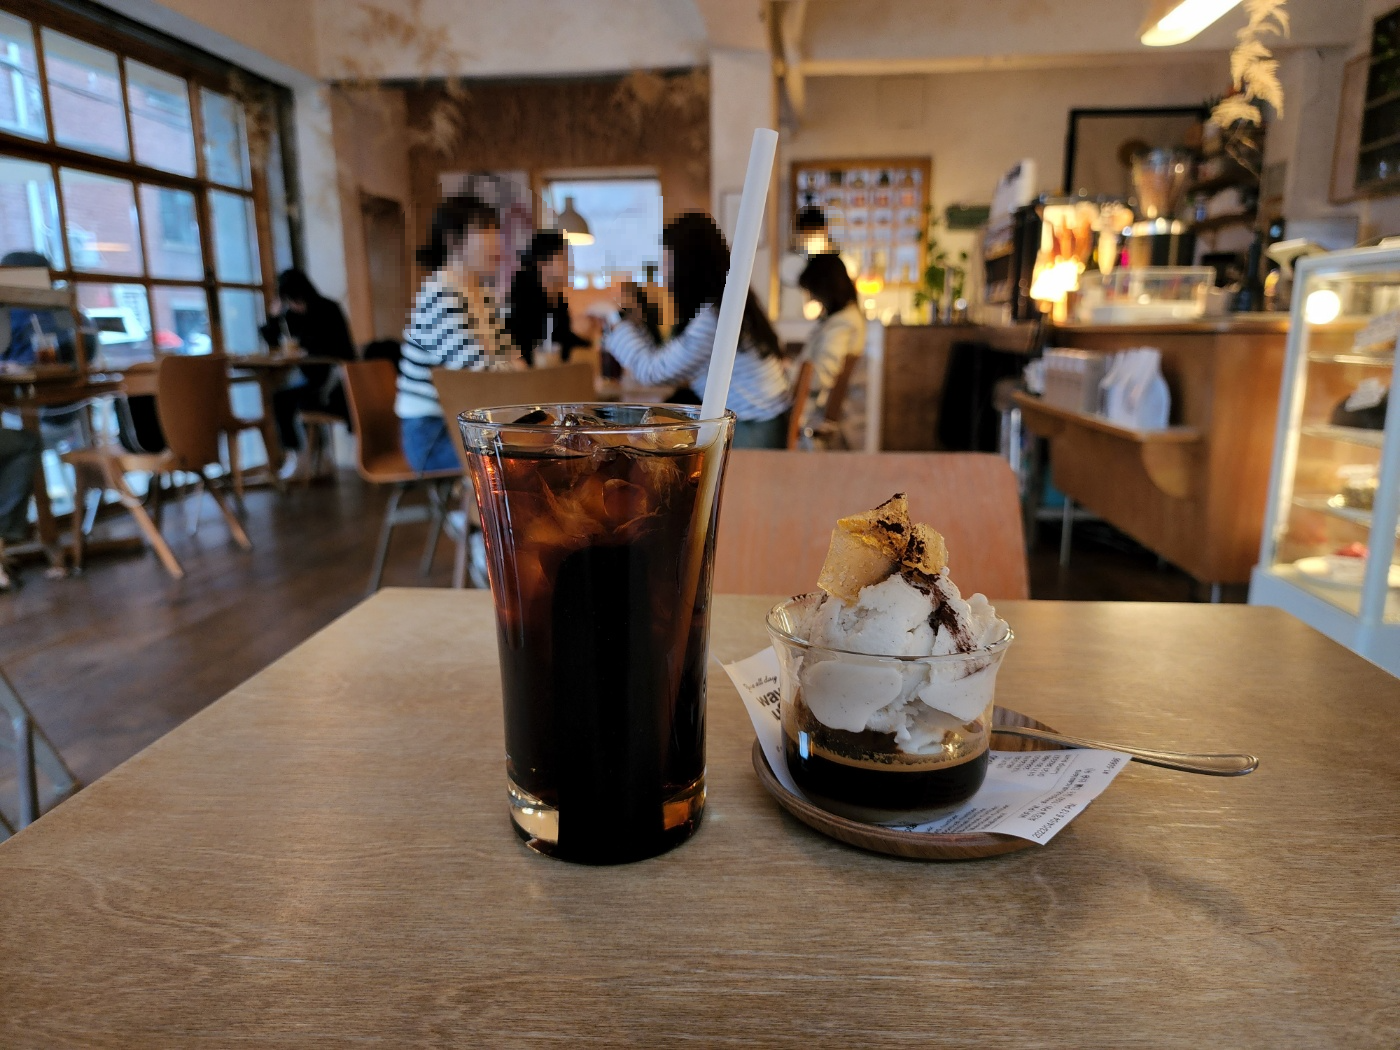 카페 내부 좌석을 배경으로 한 빨대가 있는 아이스 커피 한 잔과 아이스크림이 위에 올려진 에스프레소 한 컵